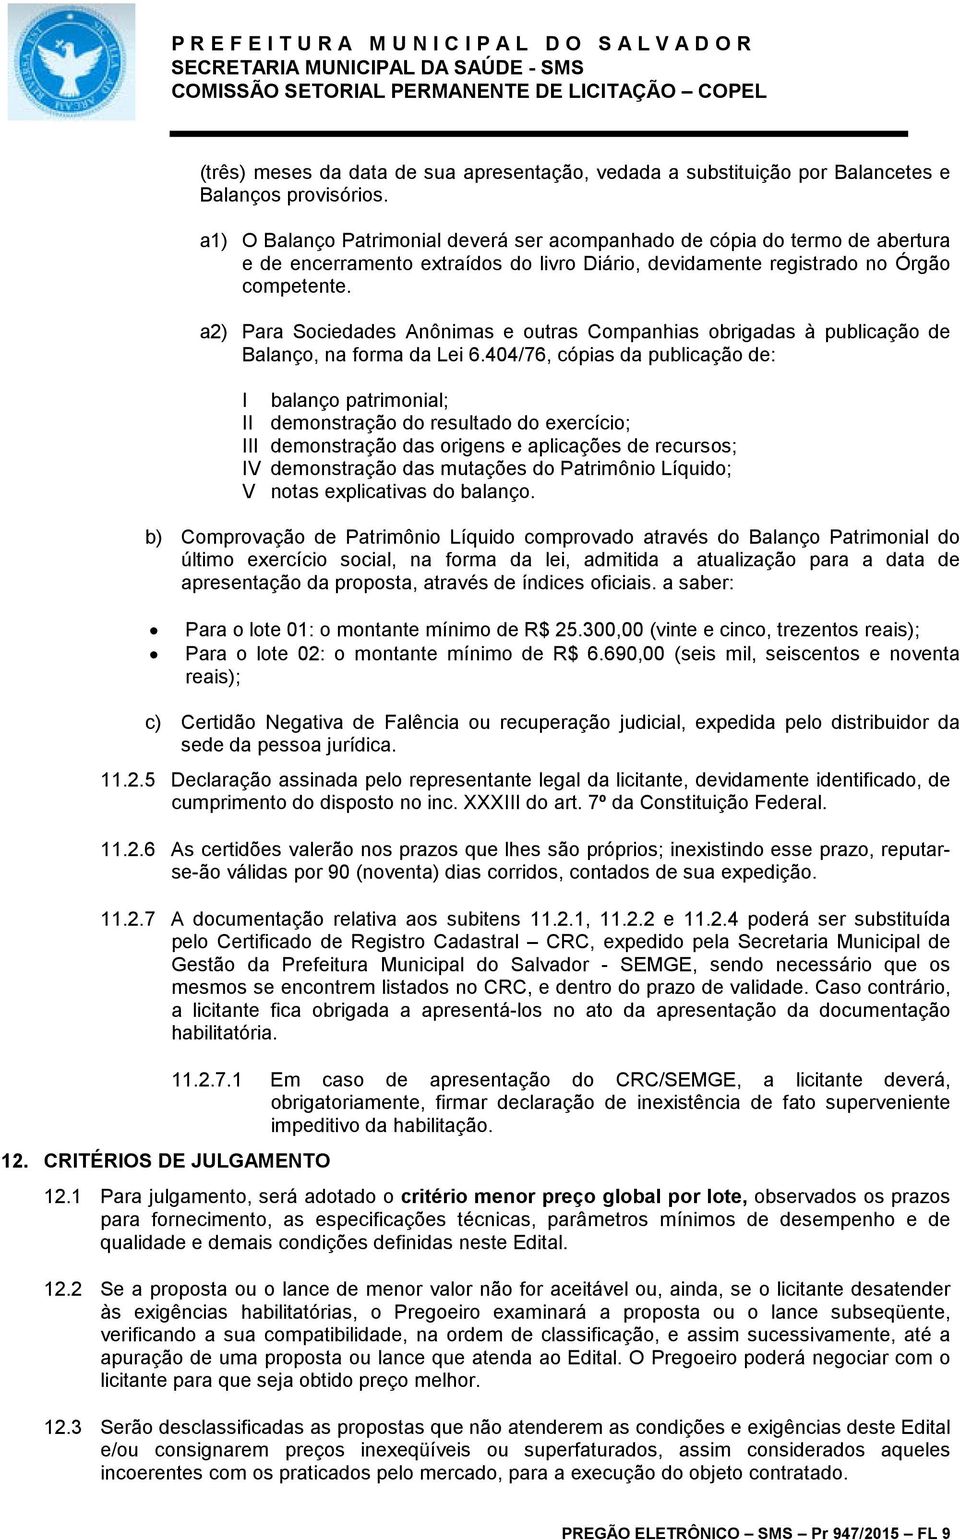 a2) Para Sociedades Anônimas e outras Companhias obrigadas à publicação de Balanço, na forma da Lei 6.